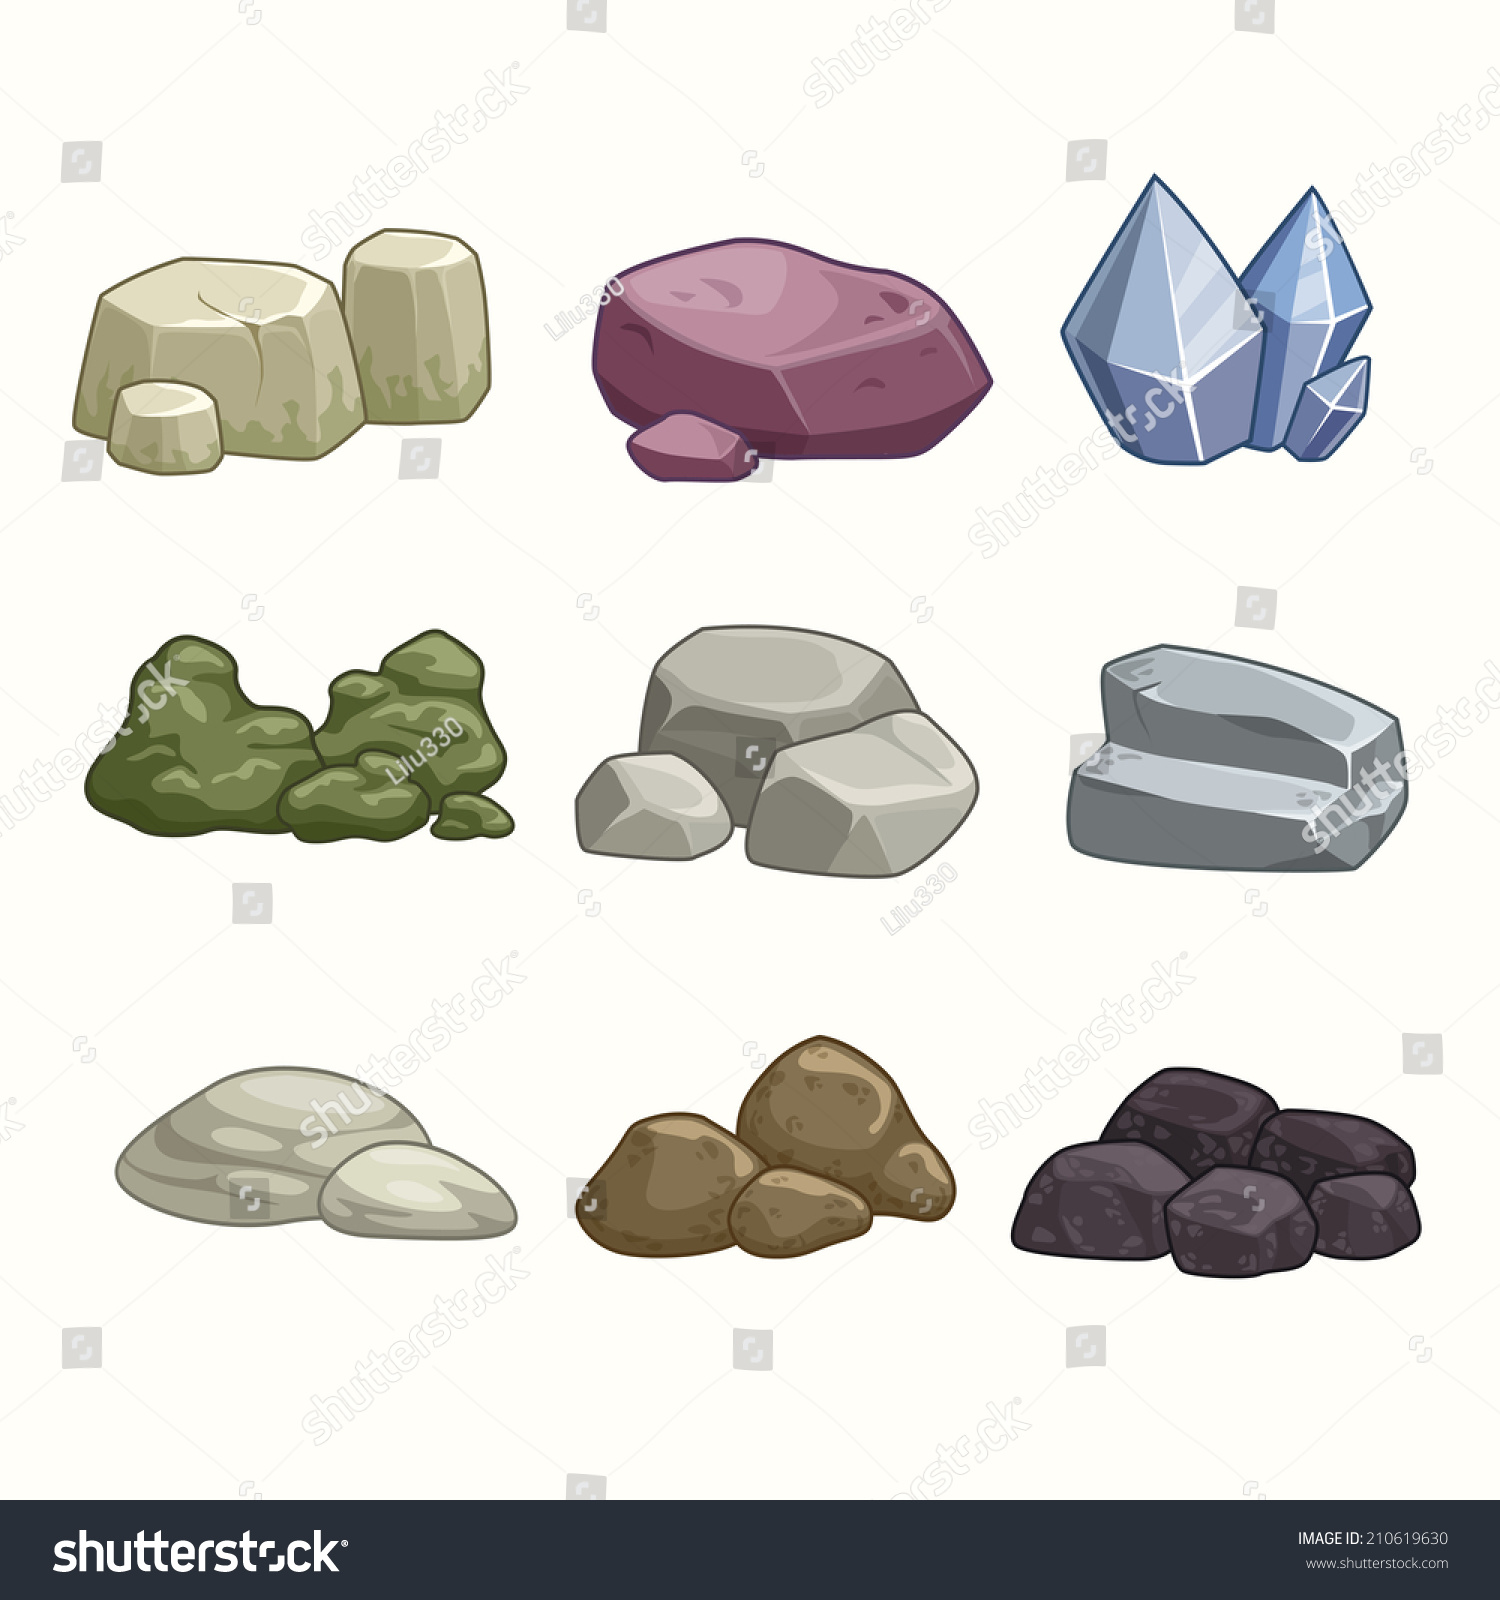 Set Of Cartoon Vector Stones And Minerals - 210619630 : Shutterstock